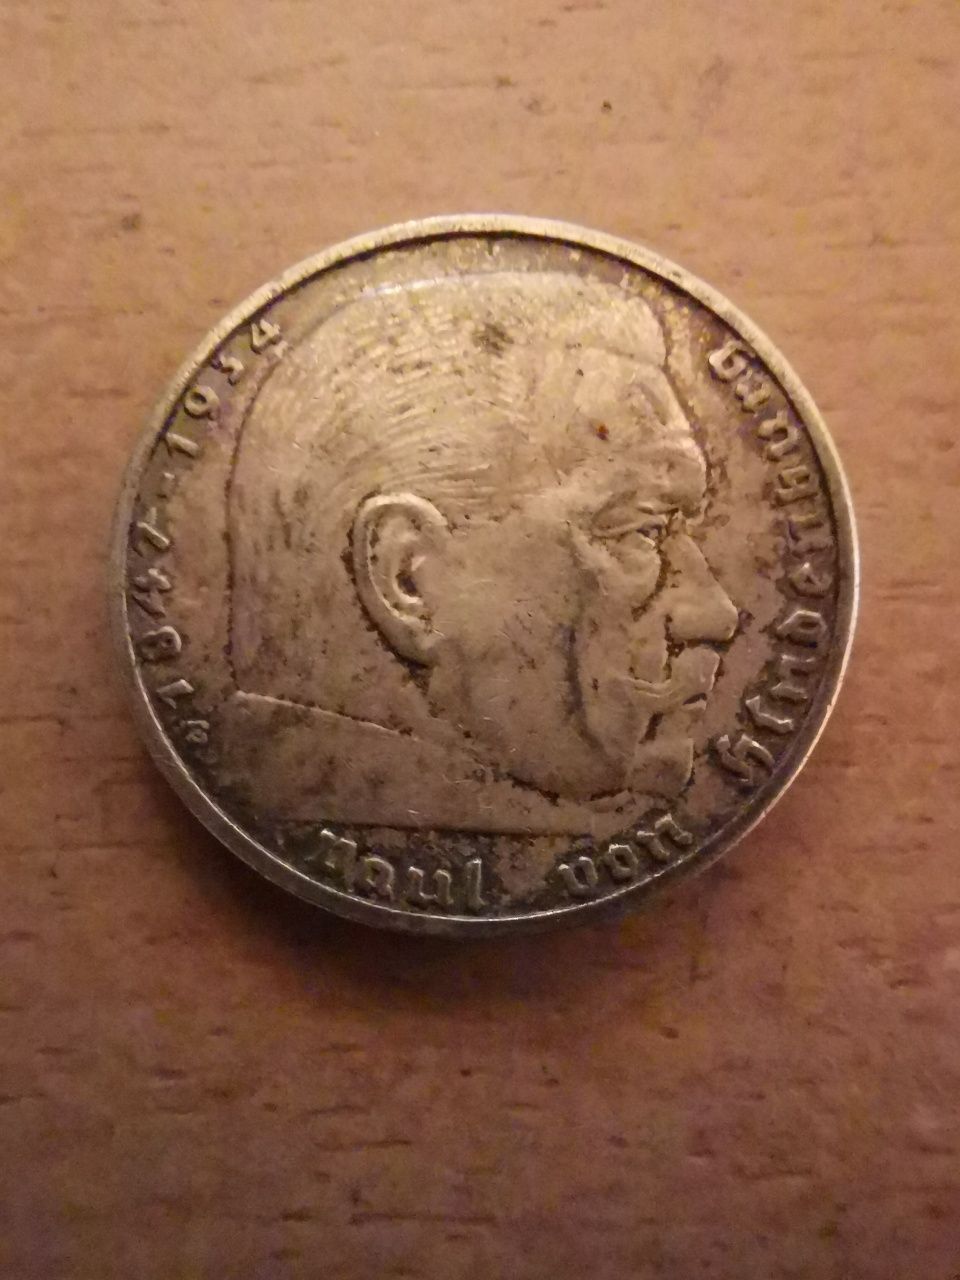 2 Deutsches Reichmark 1937 rok (2 Reich marki)